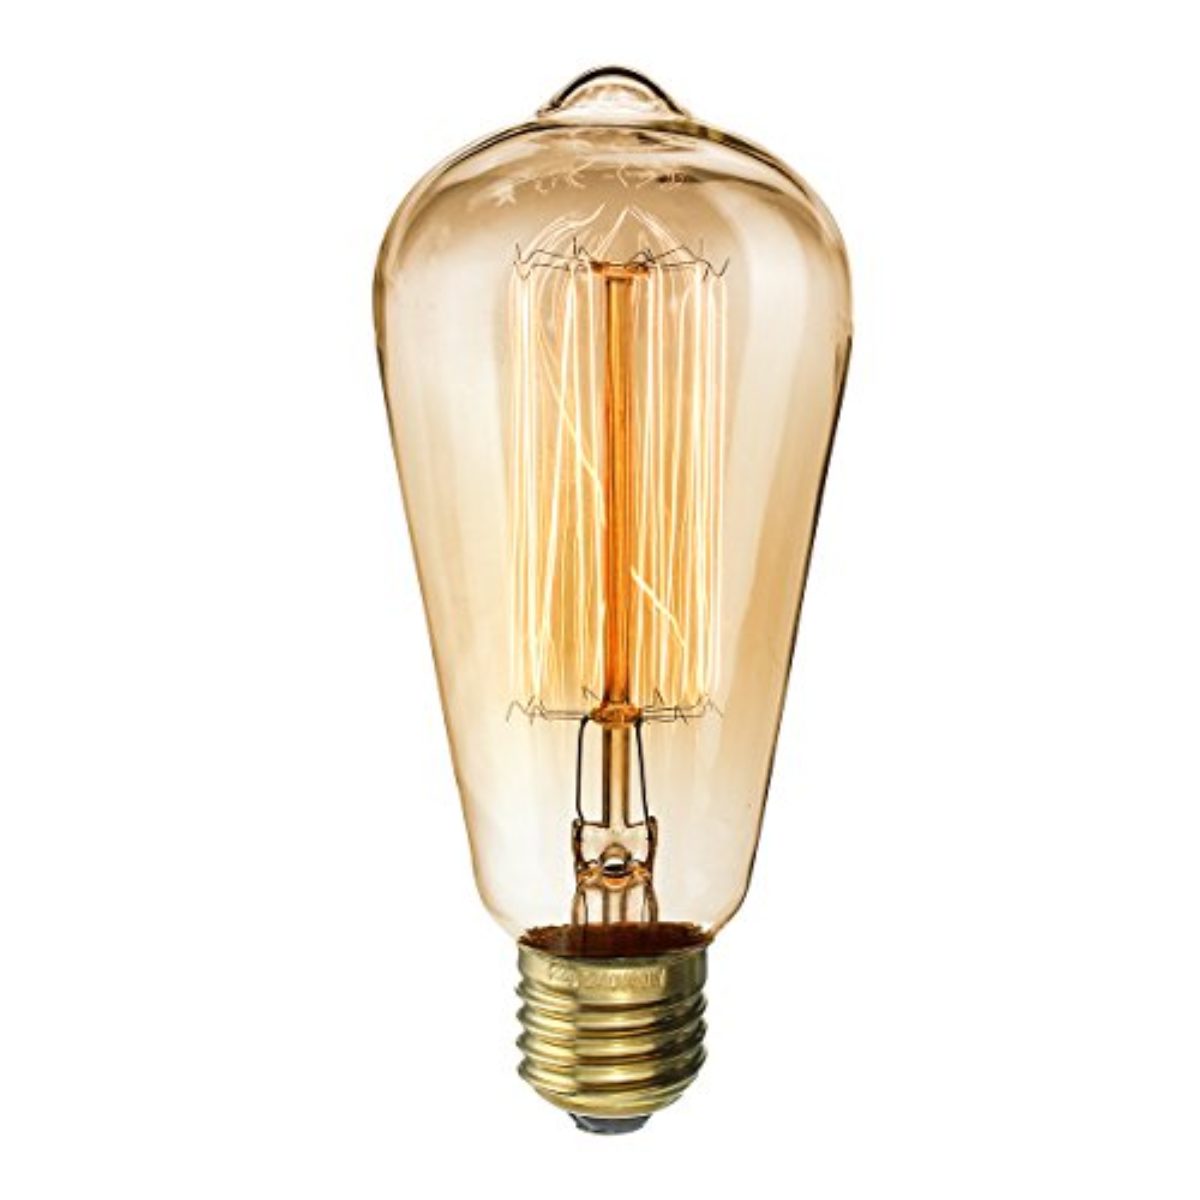 KINGSO 3 pack E27 Ampoule Edison à Incandescence Vintage ST64 60W 220V Lampe Tungstène Décorative Ampoule Filament Classique Antique Dimmable Blanc Chaud 